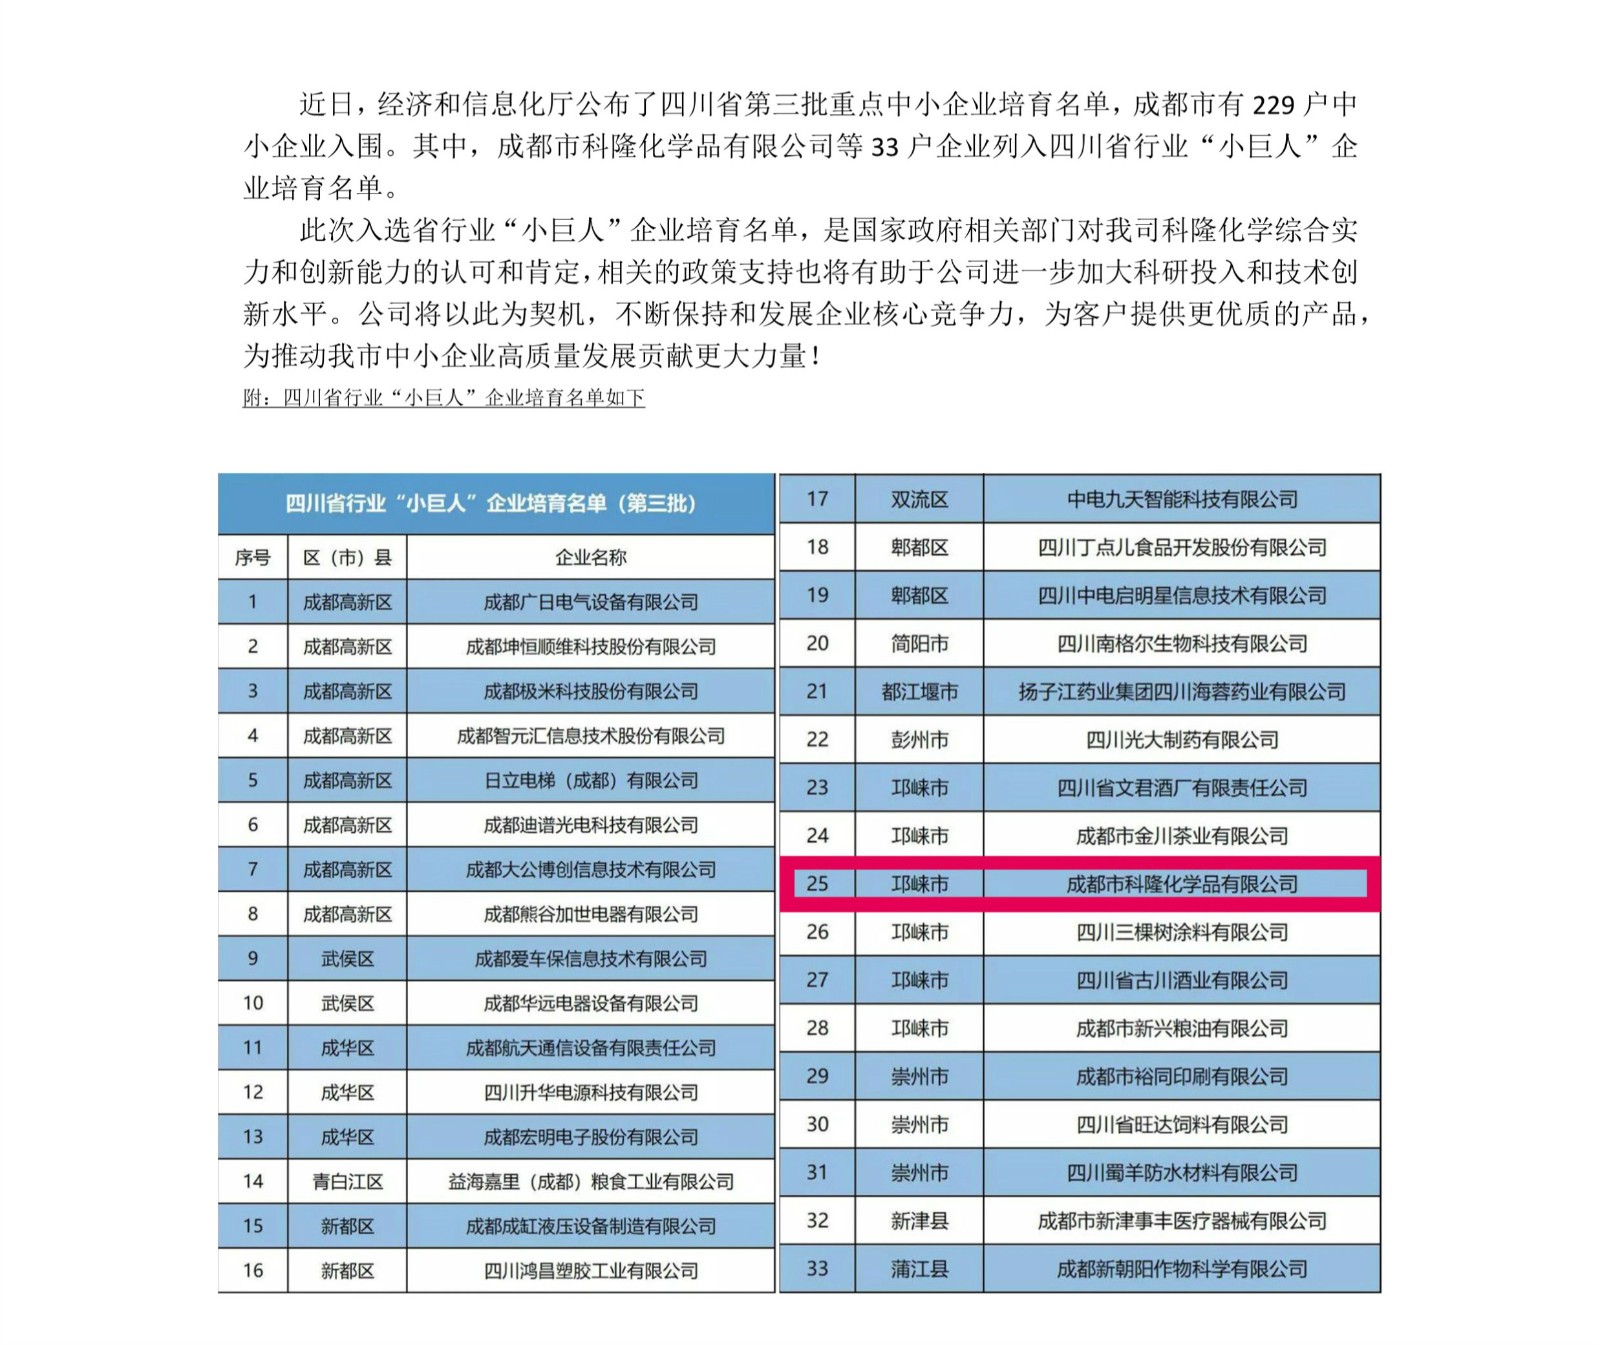 官网发布新闻小巨人企业名单_1_meitu_2_meitu_3.jpg